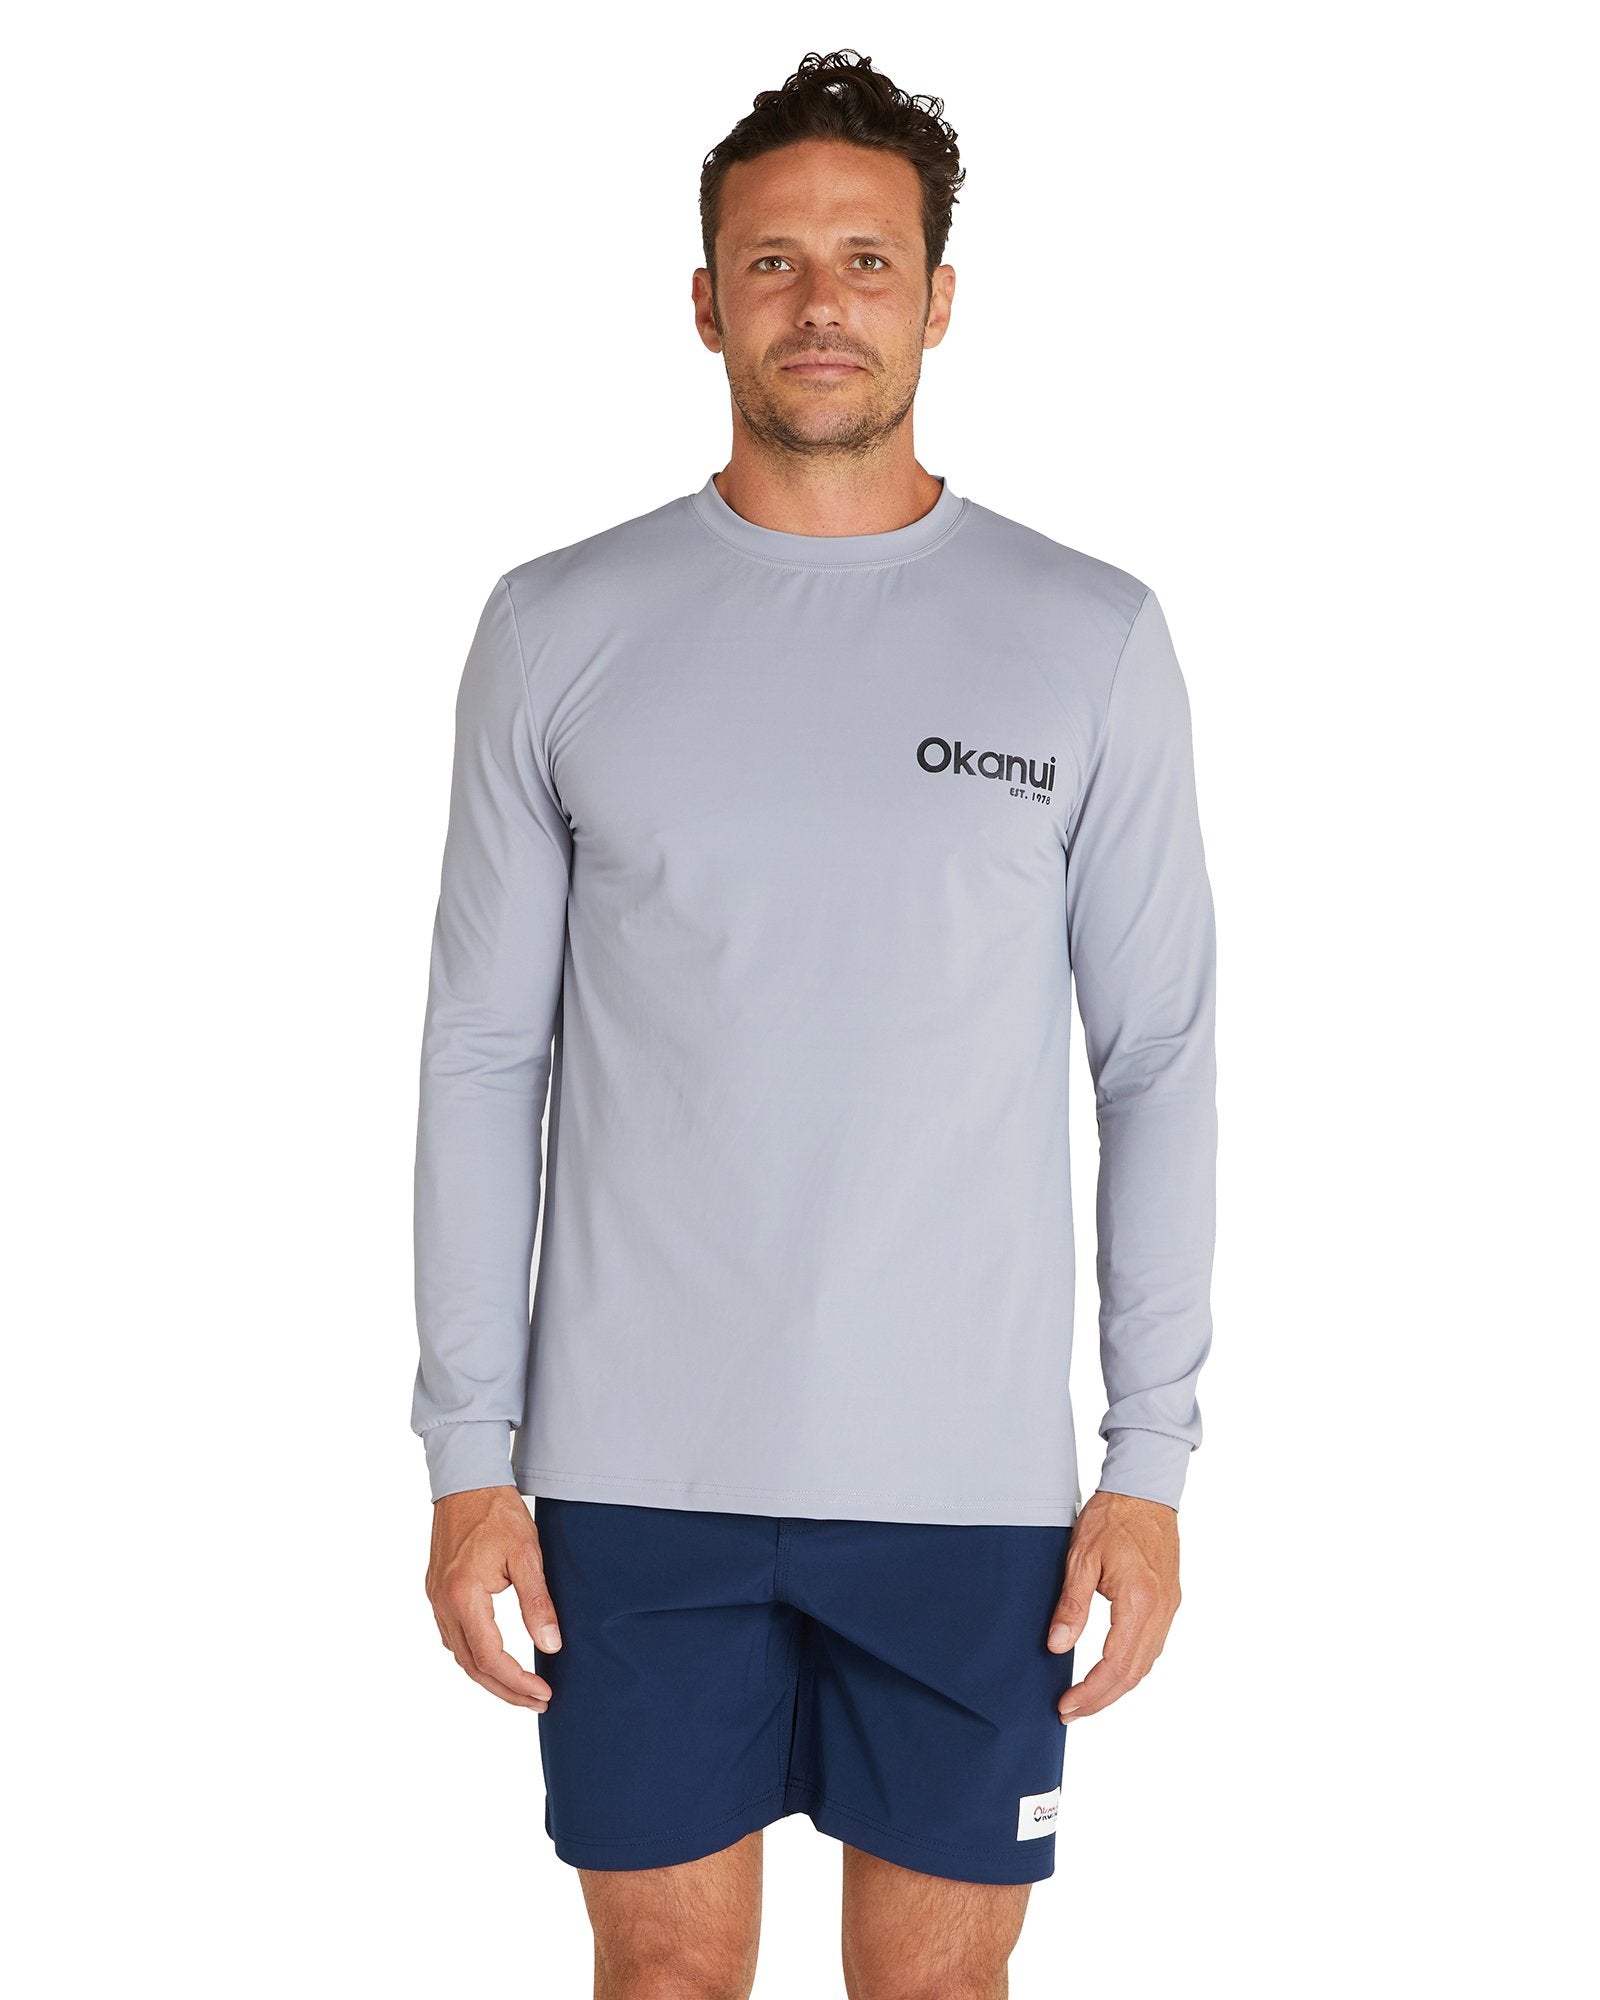 Long Sleeve Rashie - Grey Logo Rash shirt